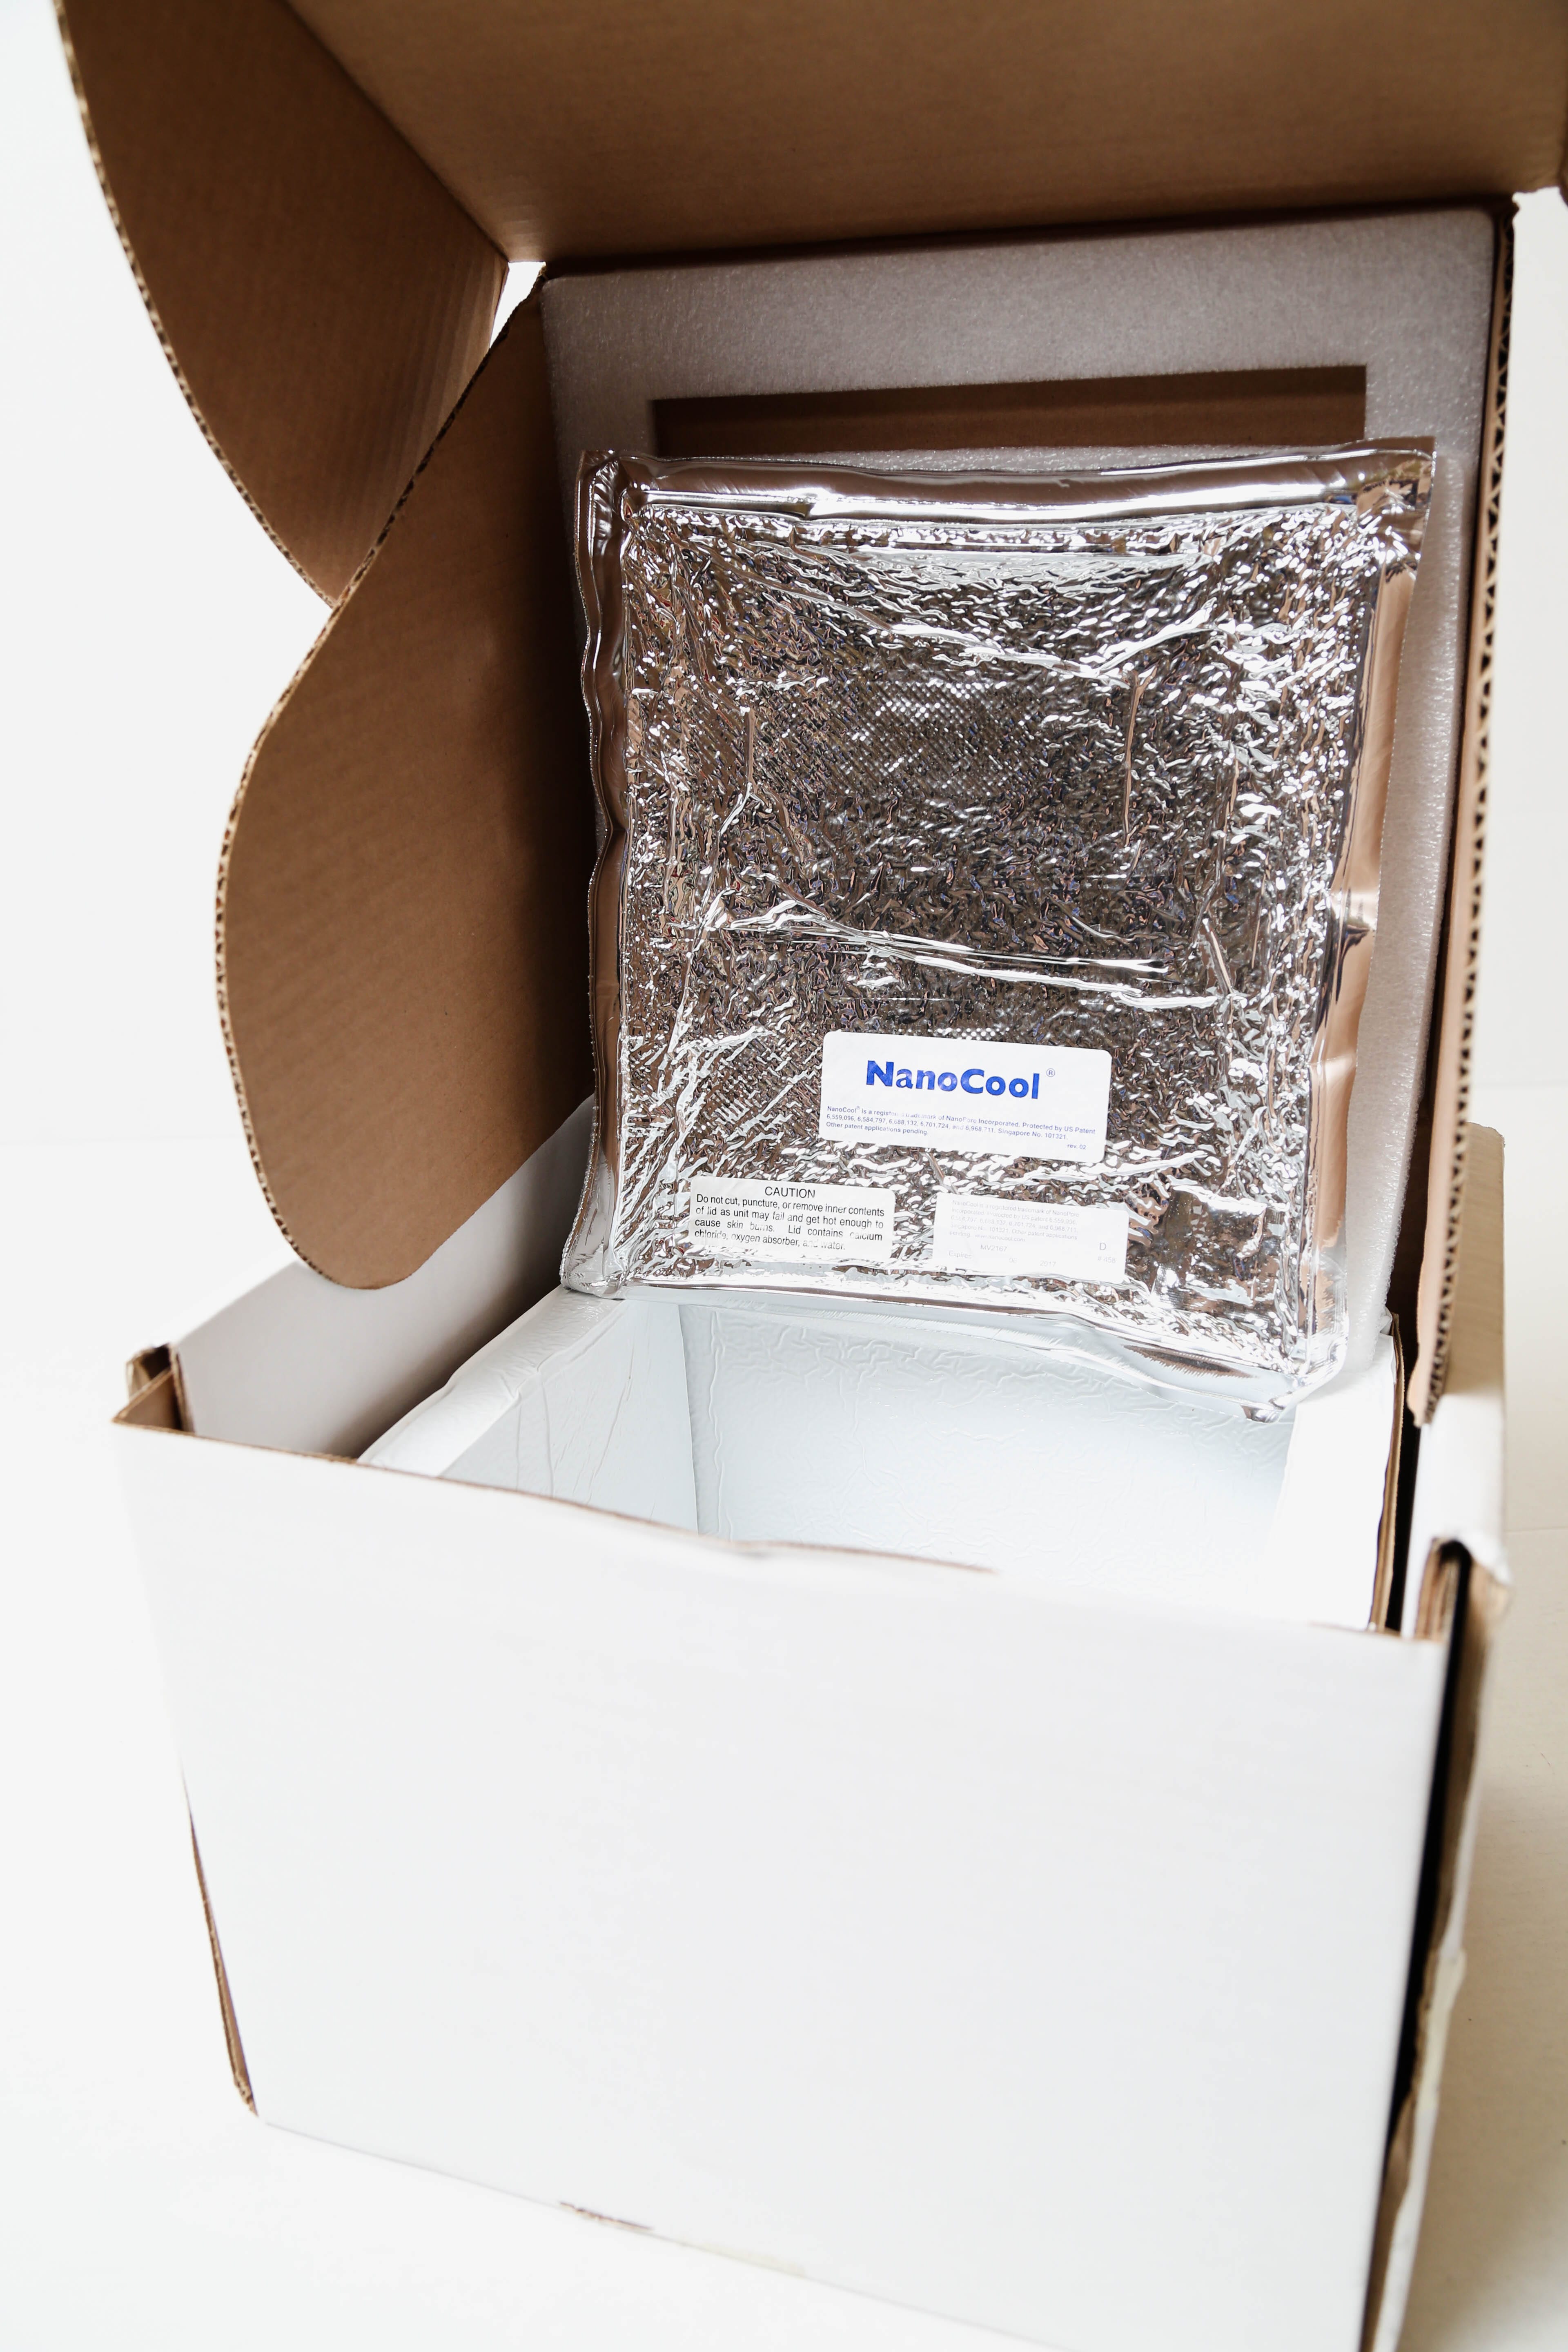 Boîte de carton ondulé avec blocs réfrigérants à l'intérieur